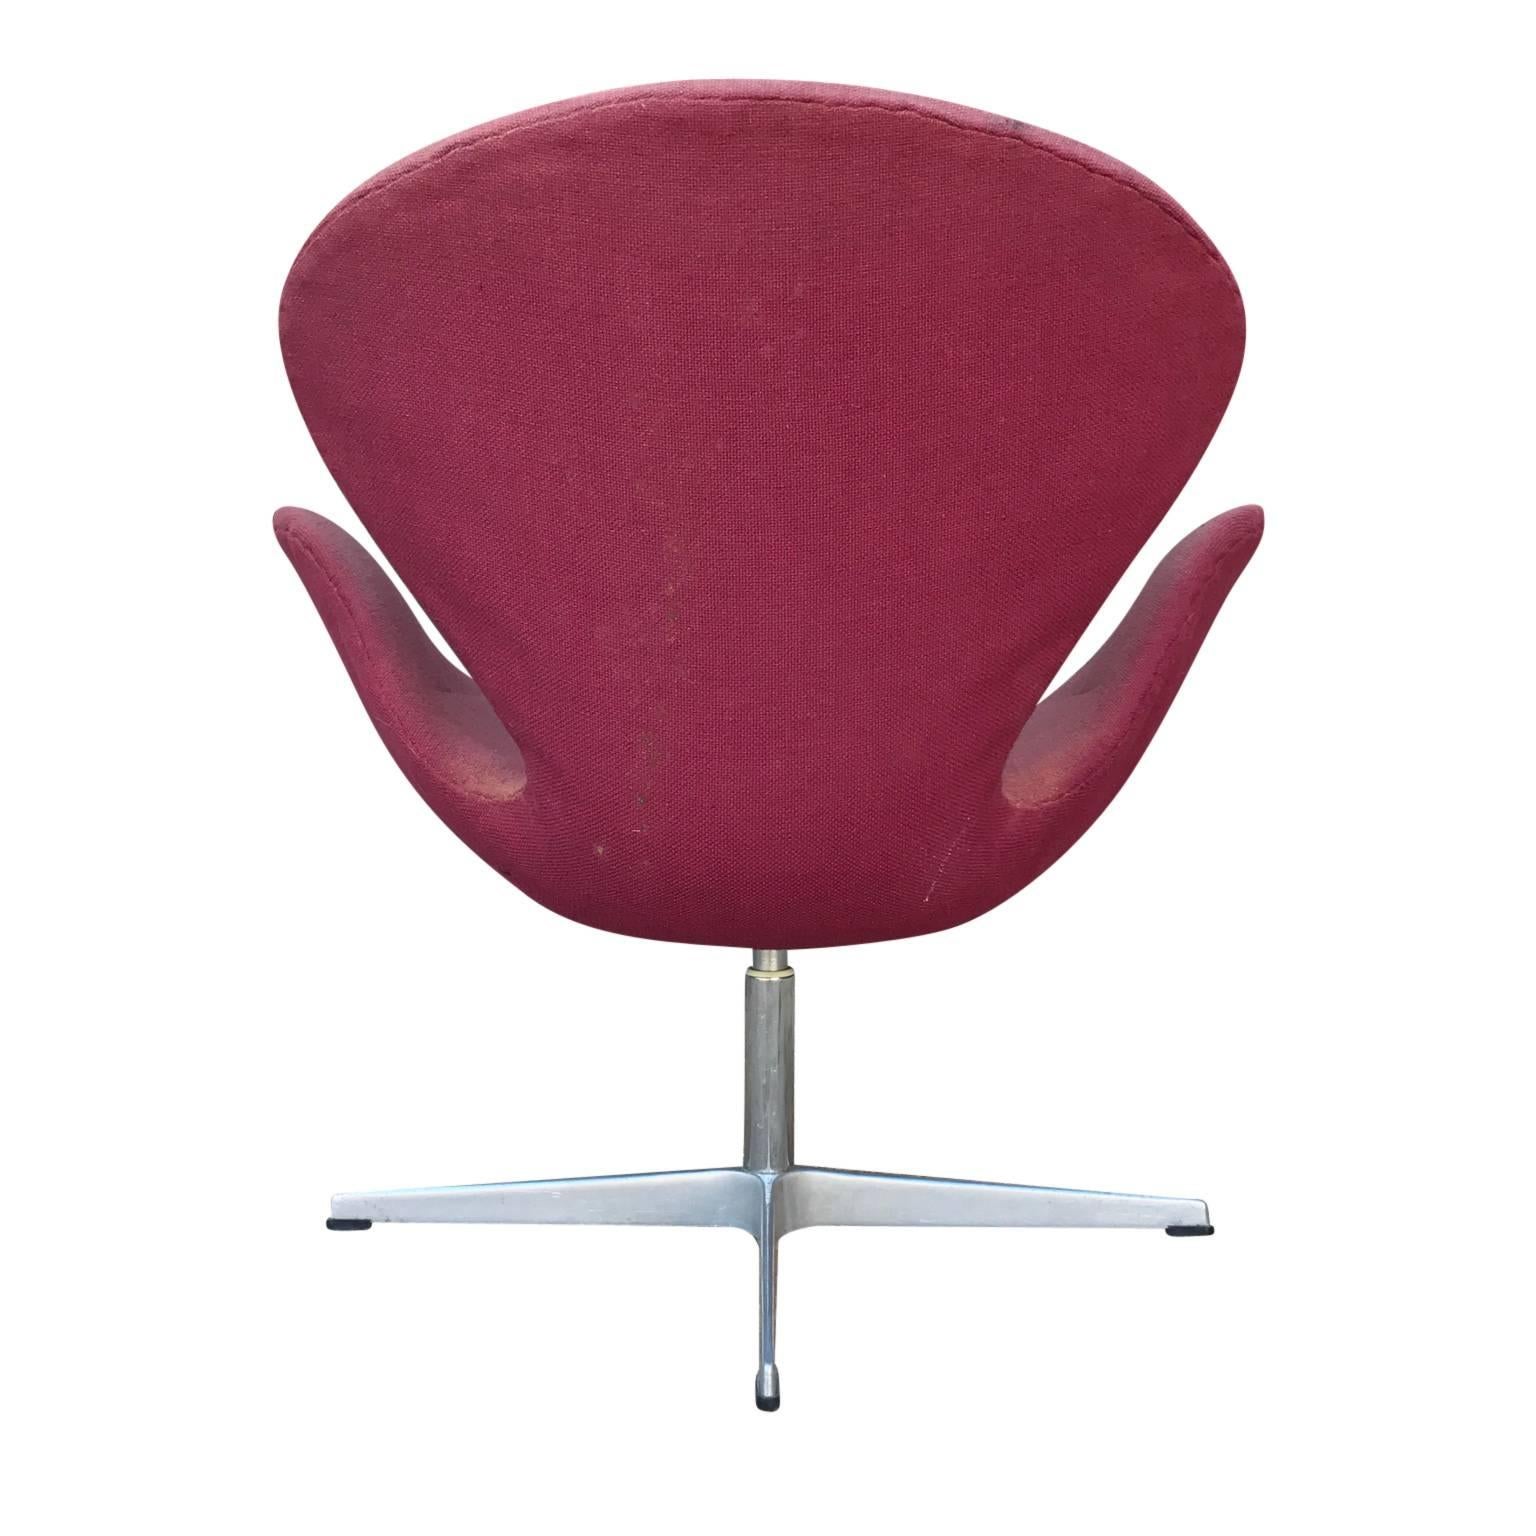 Mid-20th Century Modern Danish Arne Jacobsen Fritz Hansen Swan Chair in Vintage Pale Red